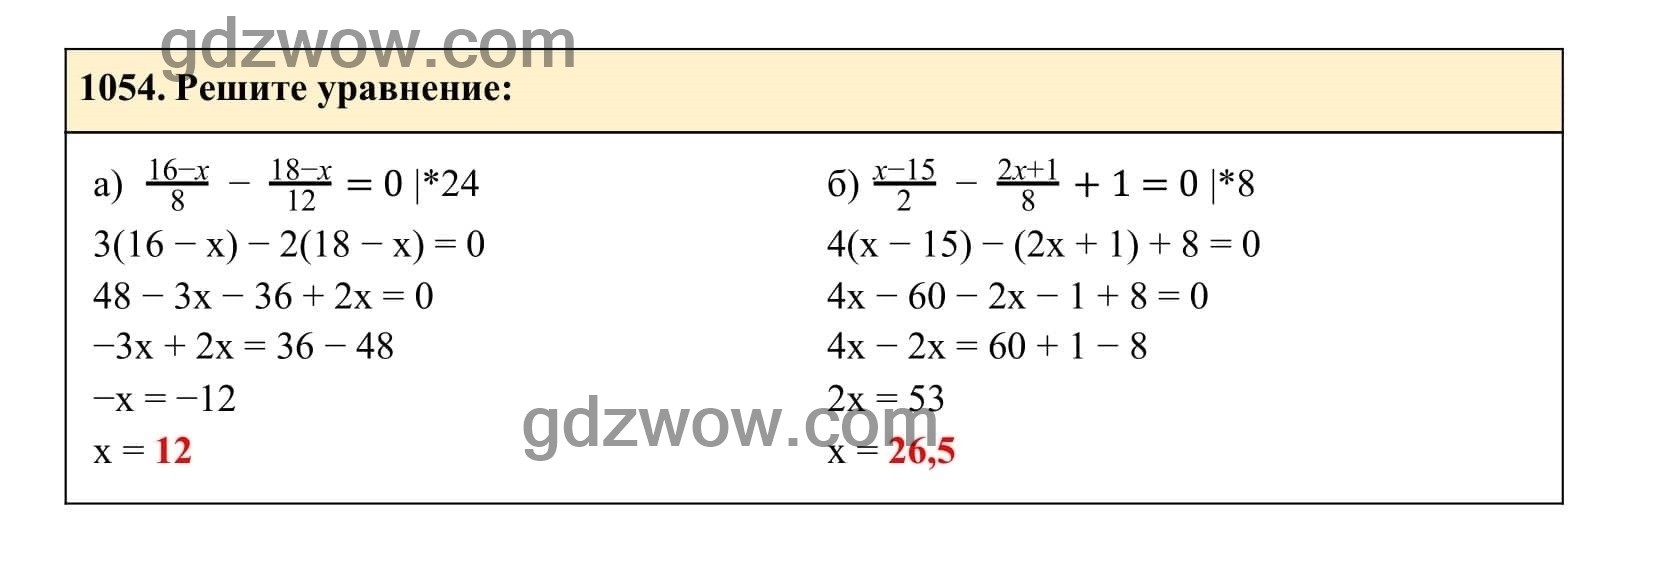 Упражнение 1054 - ГДЗ по Алгебре 7 класс Учебник Макарычев (решебник) - GDZwow